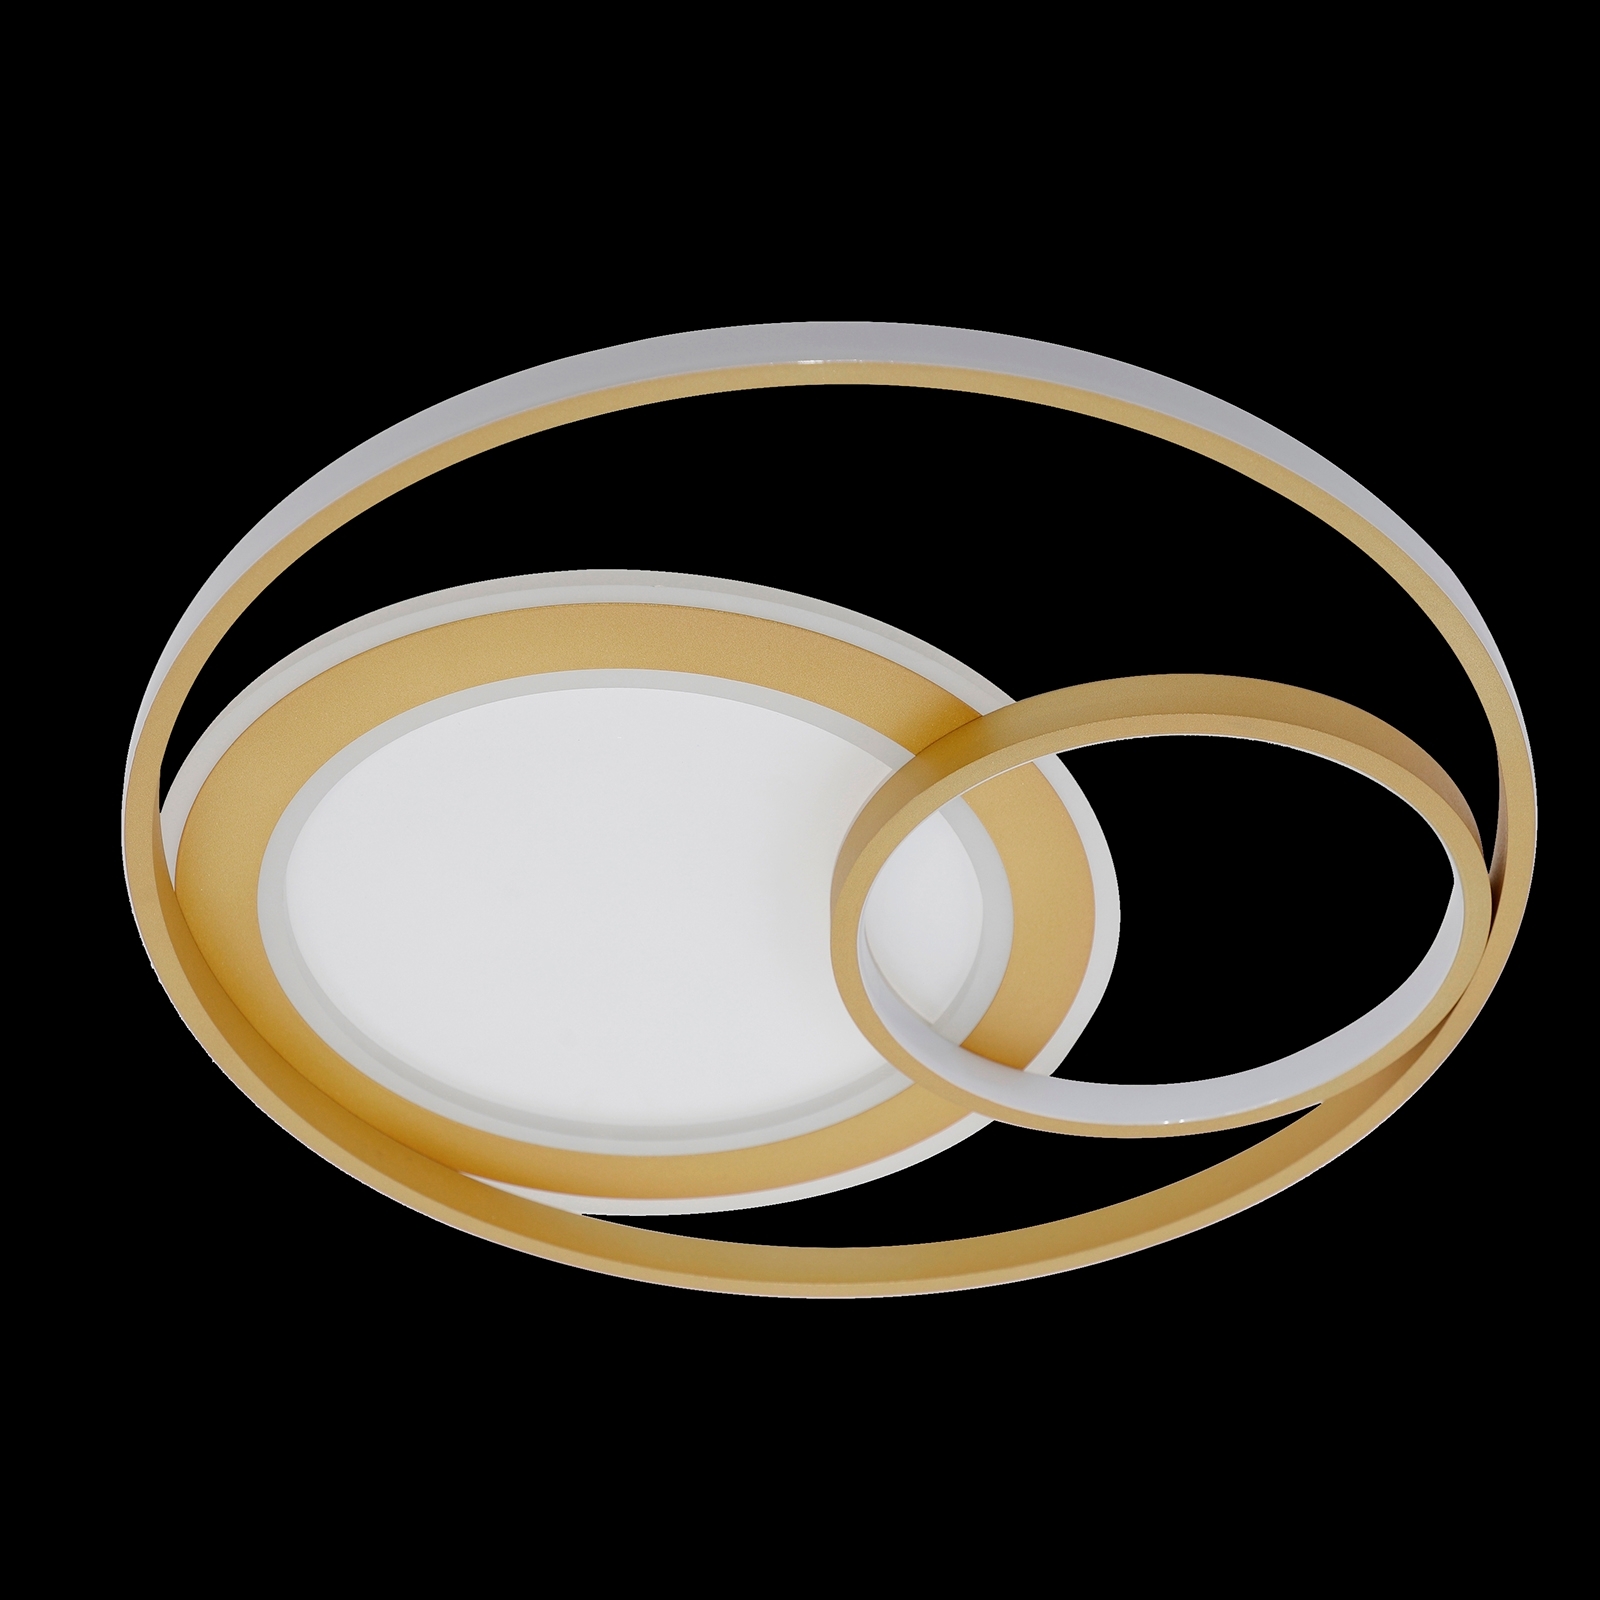 Люстра светодиодная потолочная кольцо с регулируемой яркостью. Natali Kovaltseva потолочный светильник 82029 , led, 160 Вт. Люстра светодиодная kovaltseva